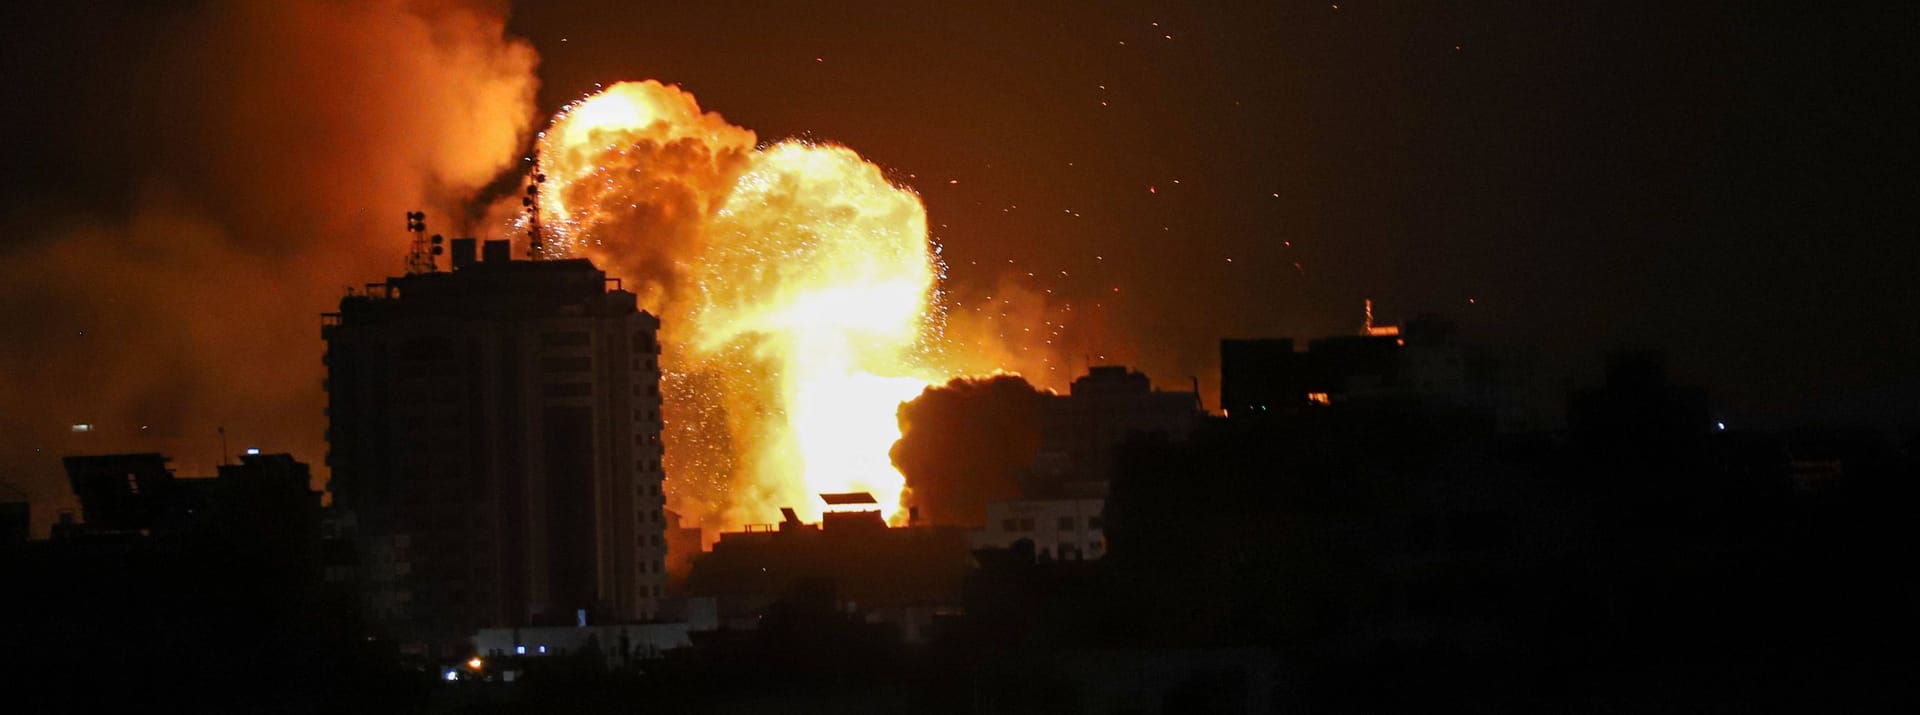 Feuer nach israelischem Beschuss in Gaza Stadt: Israel hat nach dem Angriff der palästinensischen Terroroganisation Hamas den Beschuss auf den Gazastreifen deutlich erhöht.